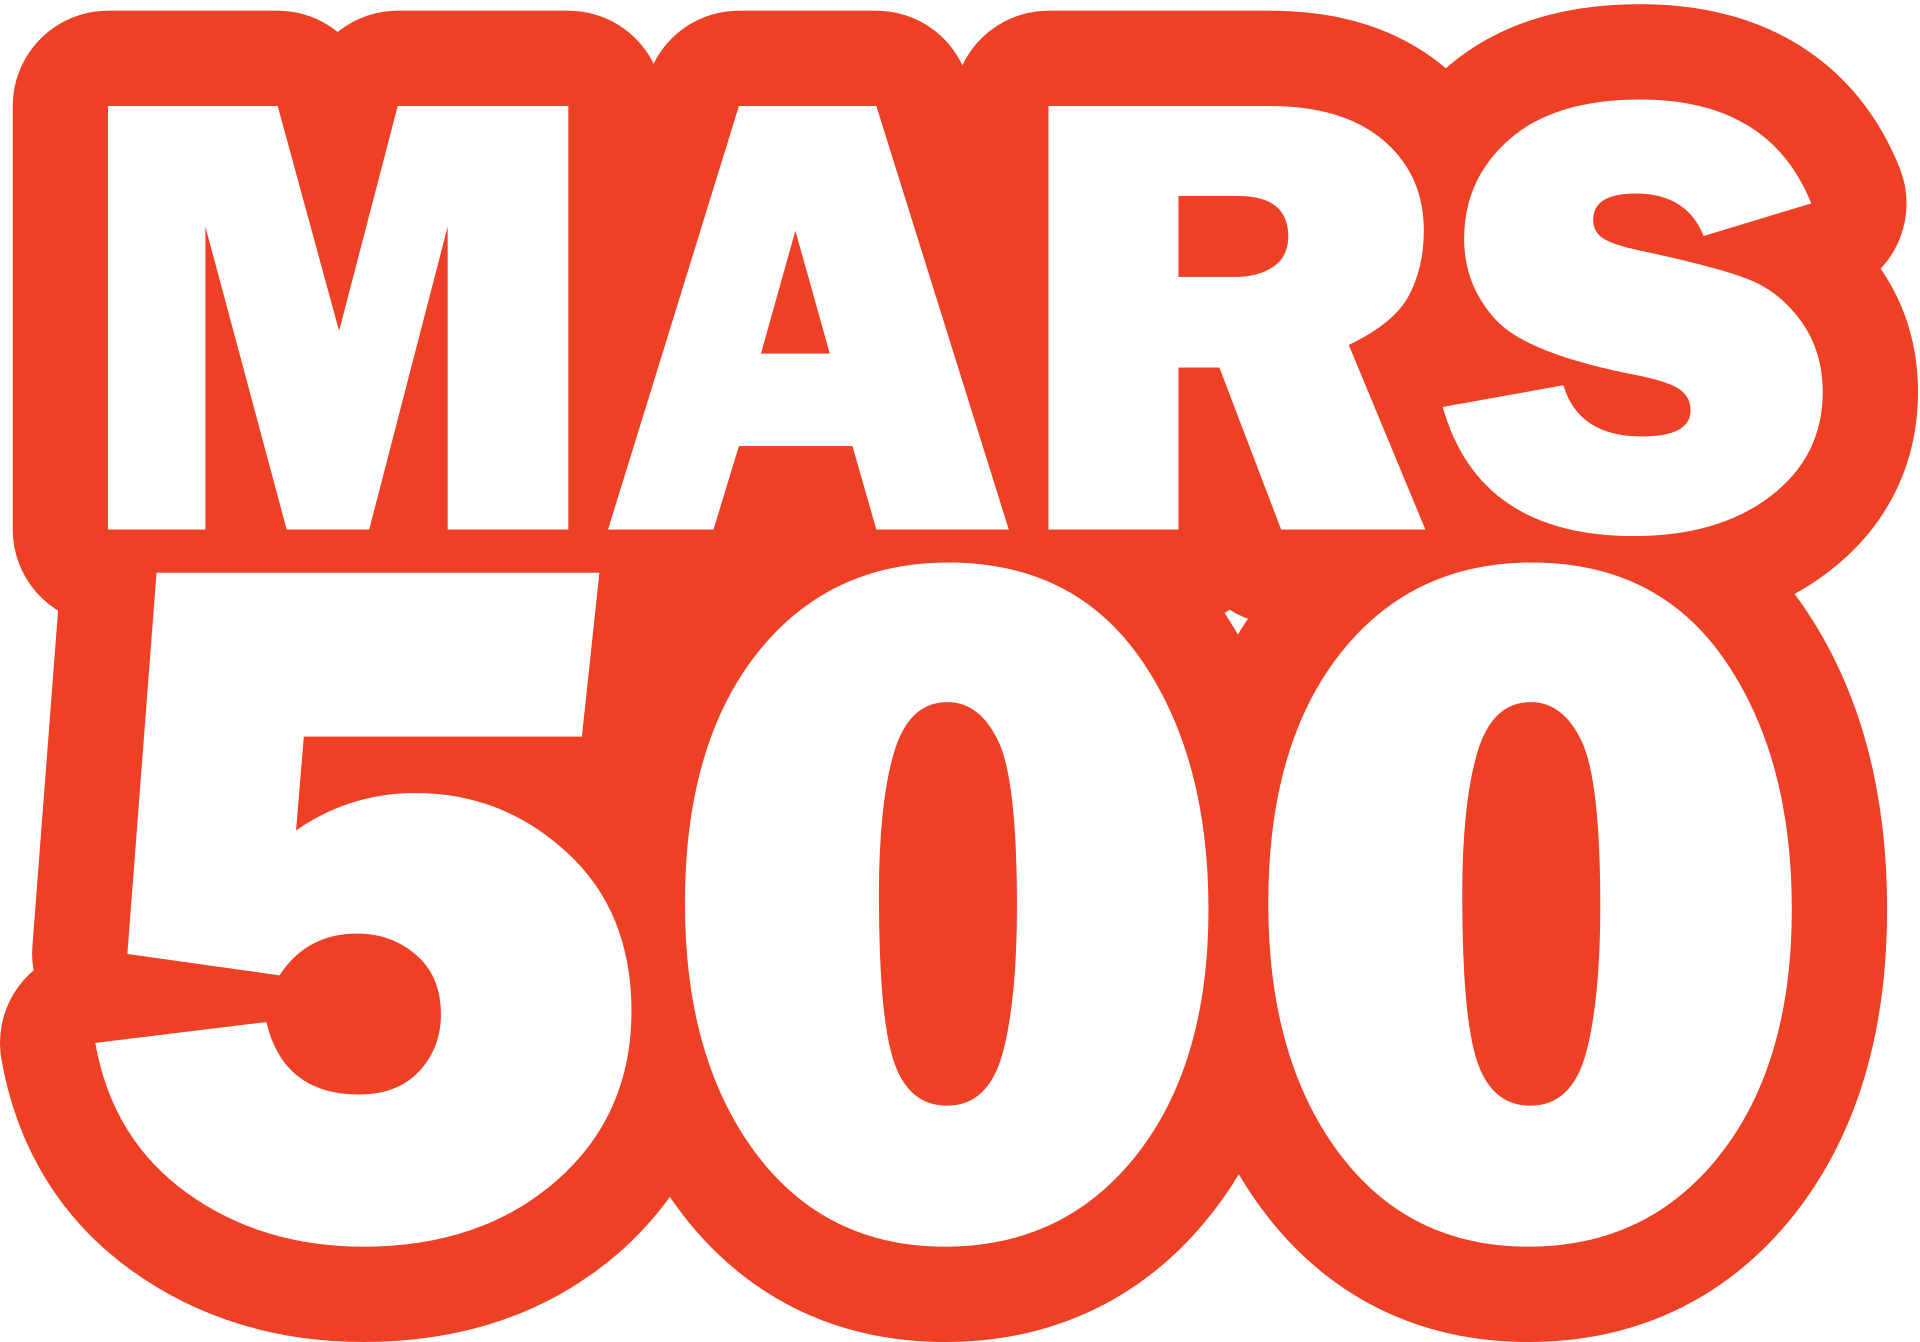 Роскосмос - Марс-500 -  эксперимент по имитации пилотируемого полёта на Марс